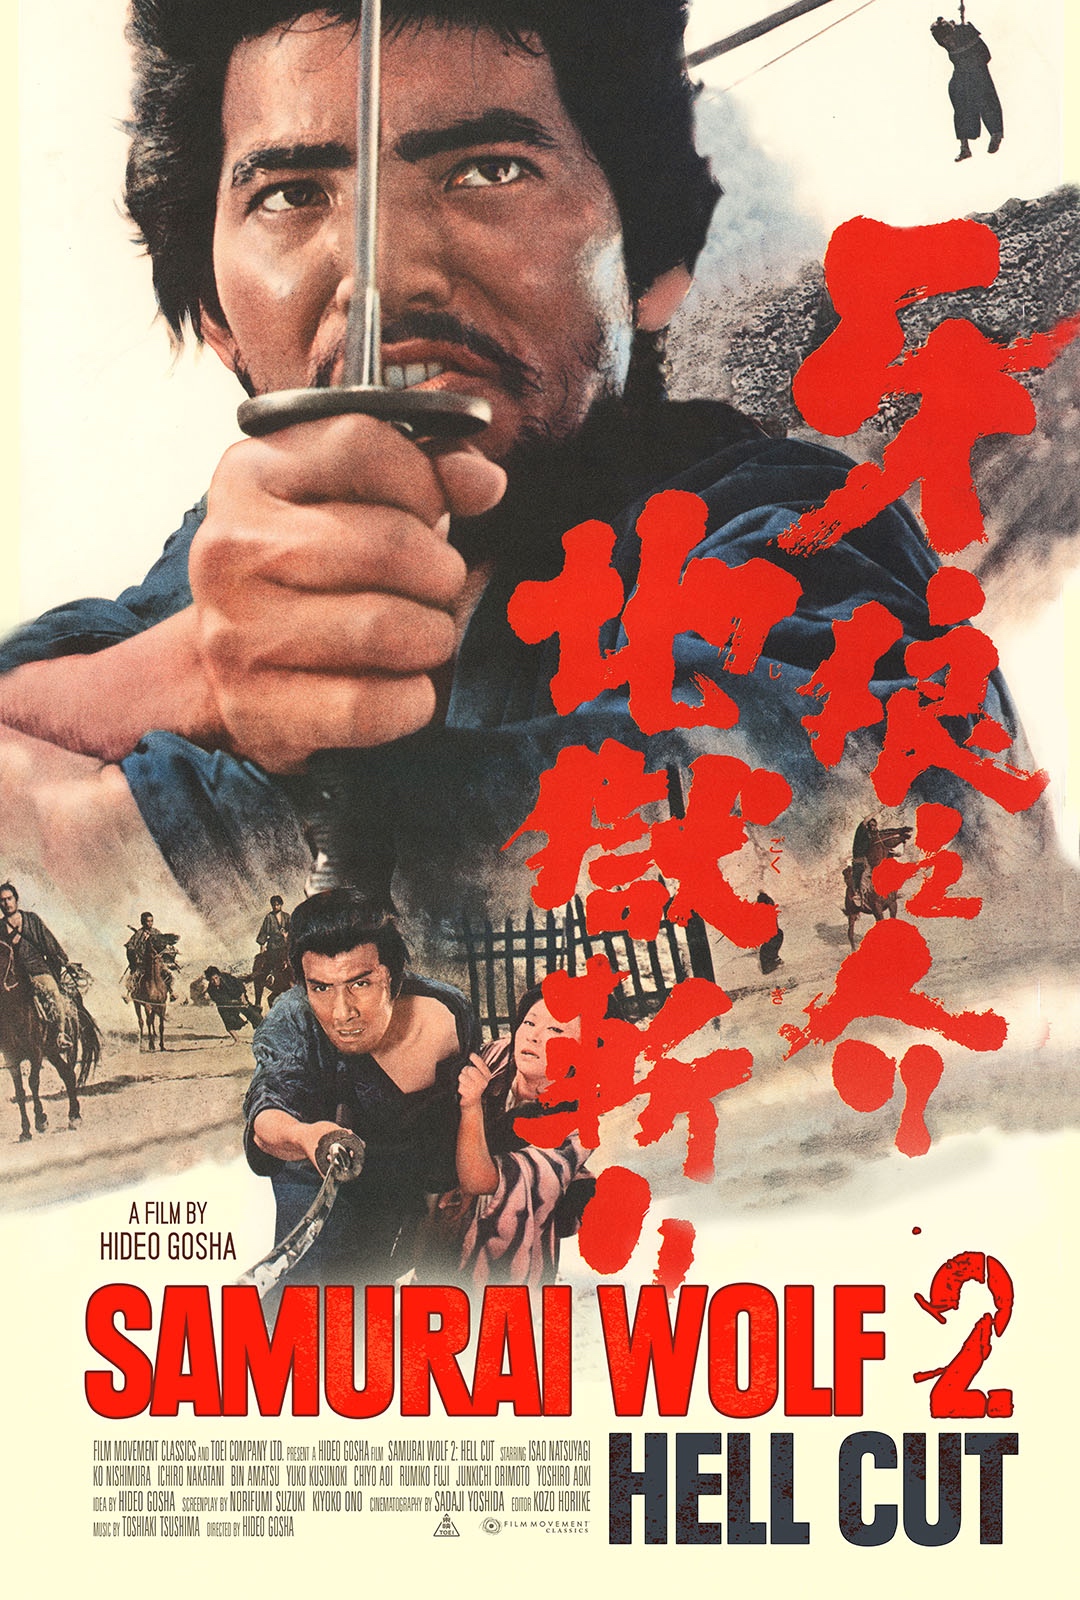 Samurai Wolf 2: Hell Cut